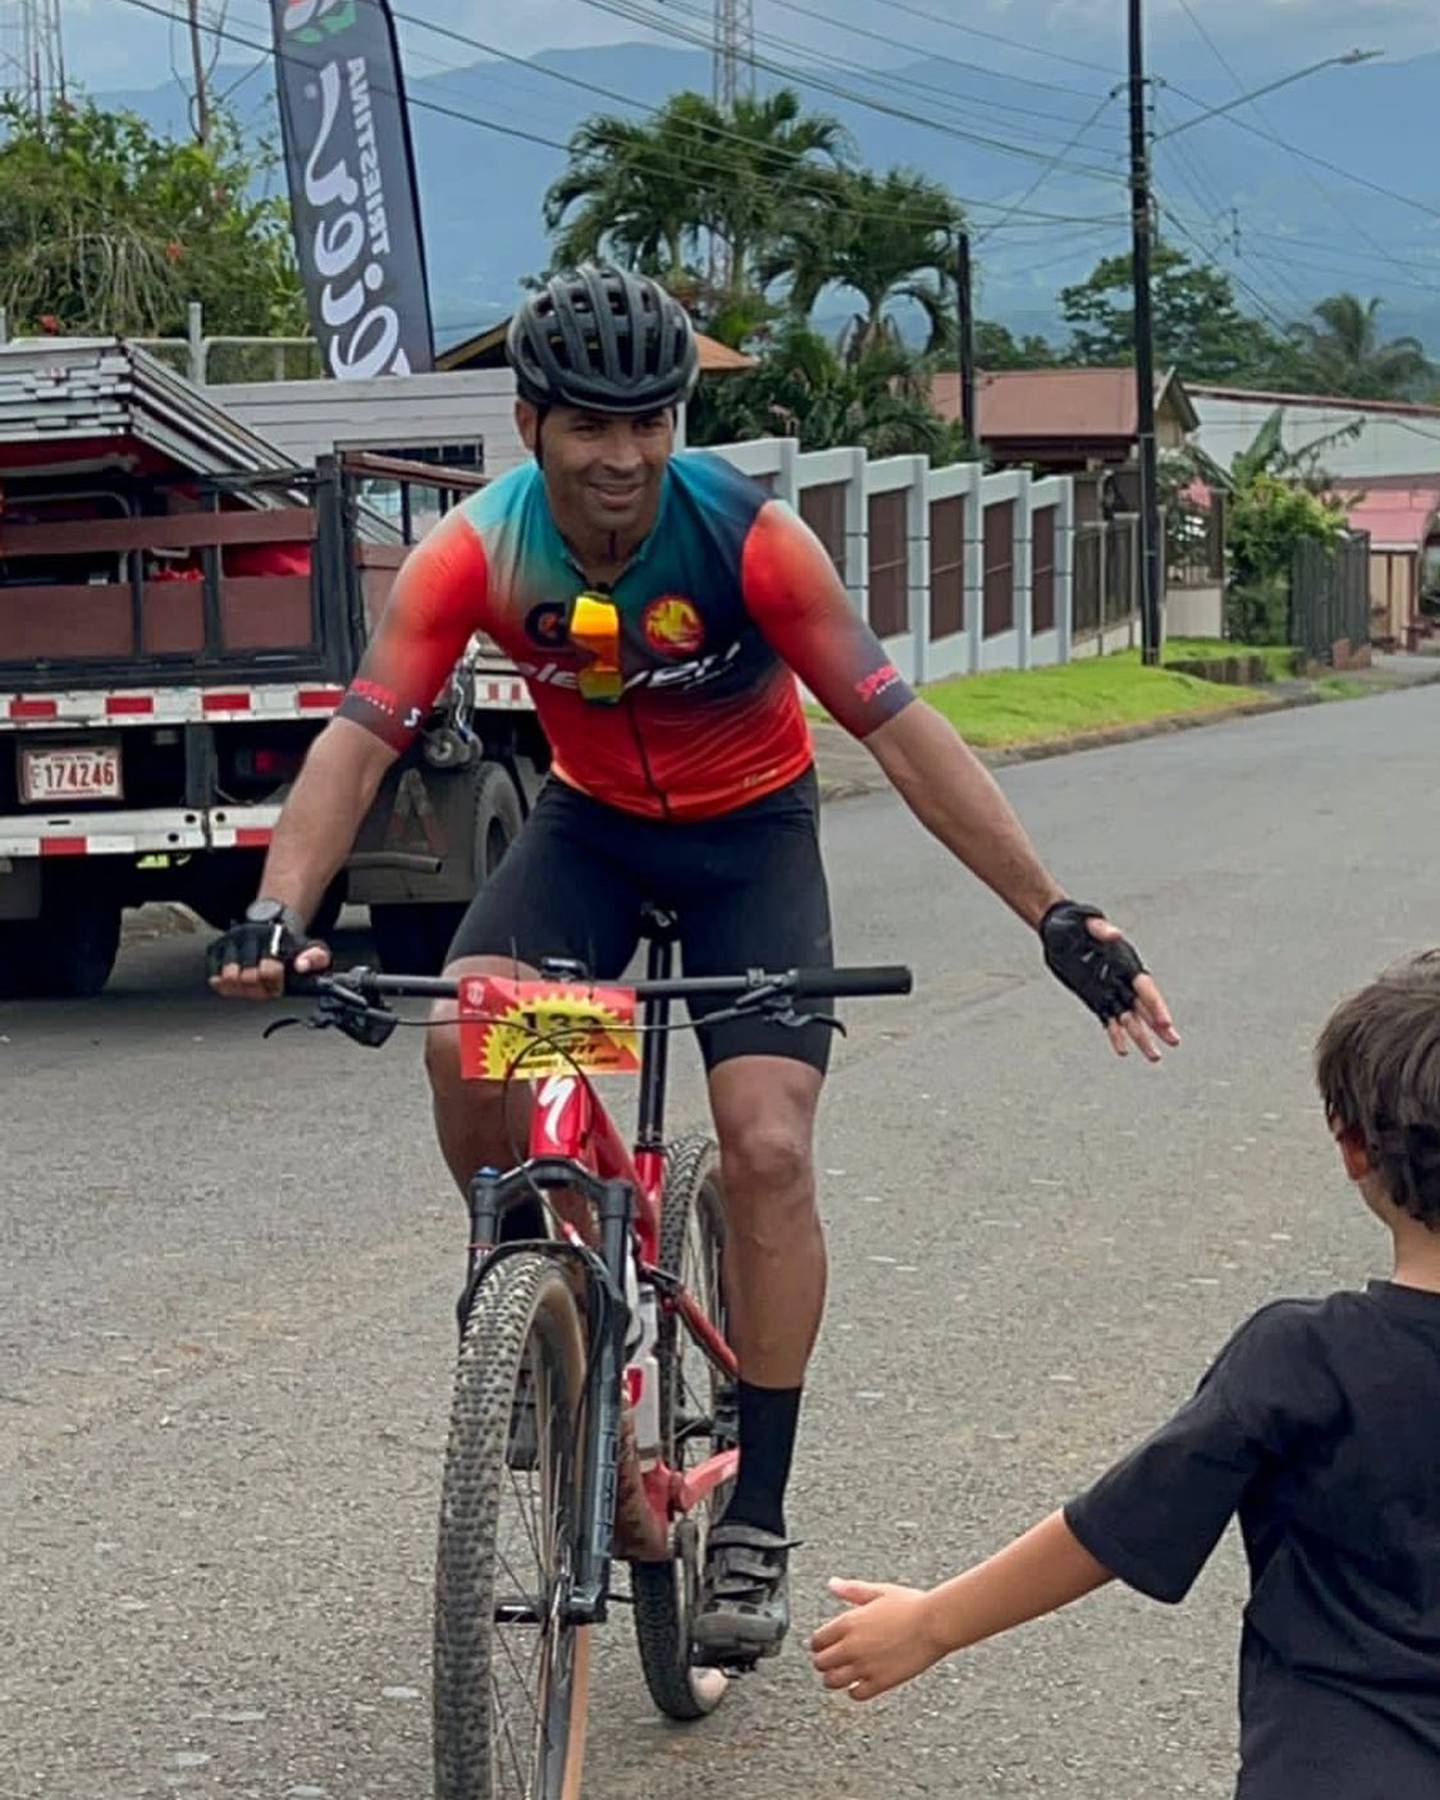 El pasado sábado 3 de setiembre, junto a otros 2.249 ciclistas, el exfutbolista Álvaro Saborío debutó en una competencia de ciclismo después del retiro, la Volcano 100, una competencia alrededor de volcán Rincón de la Vieja